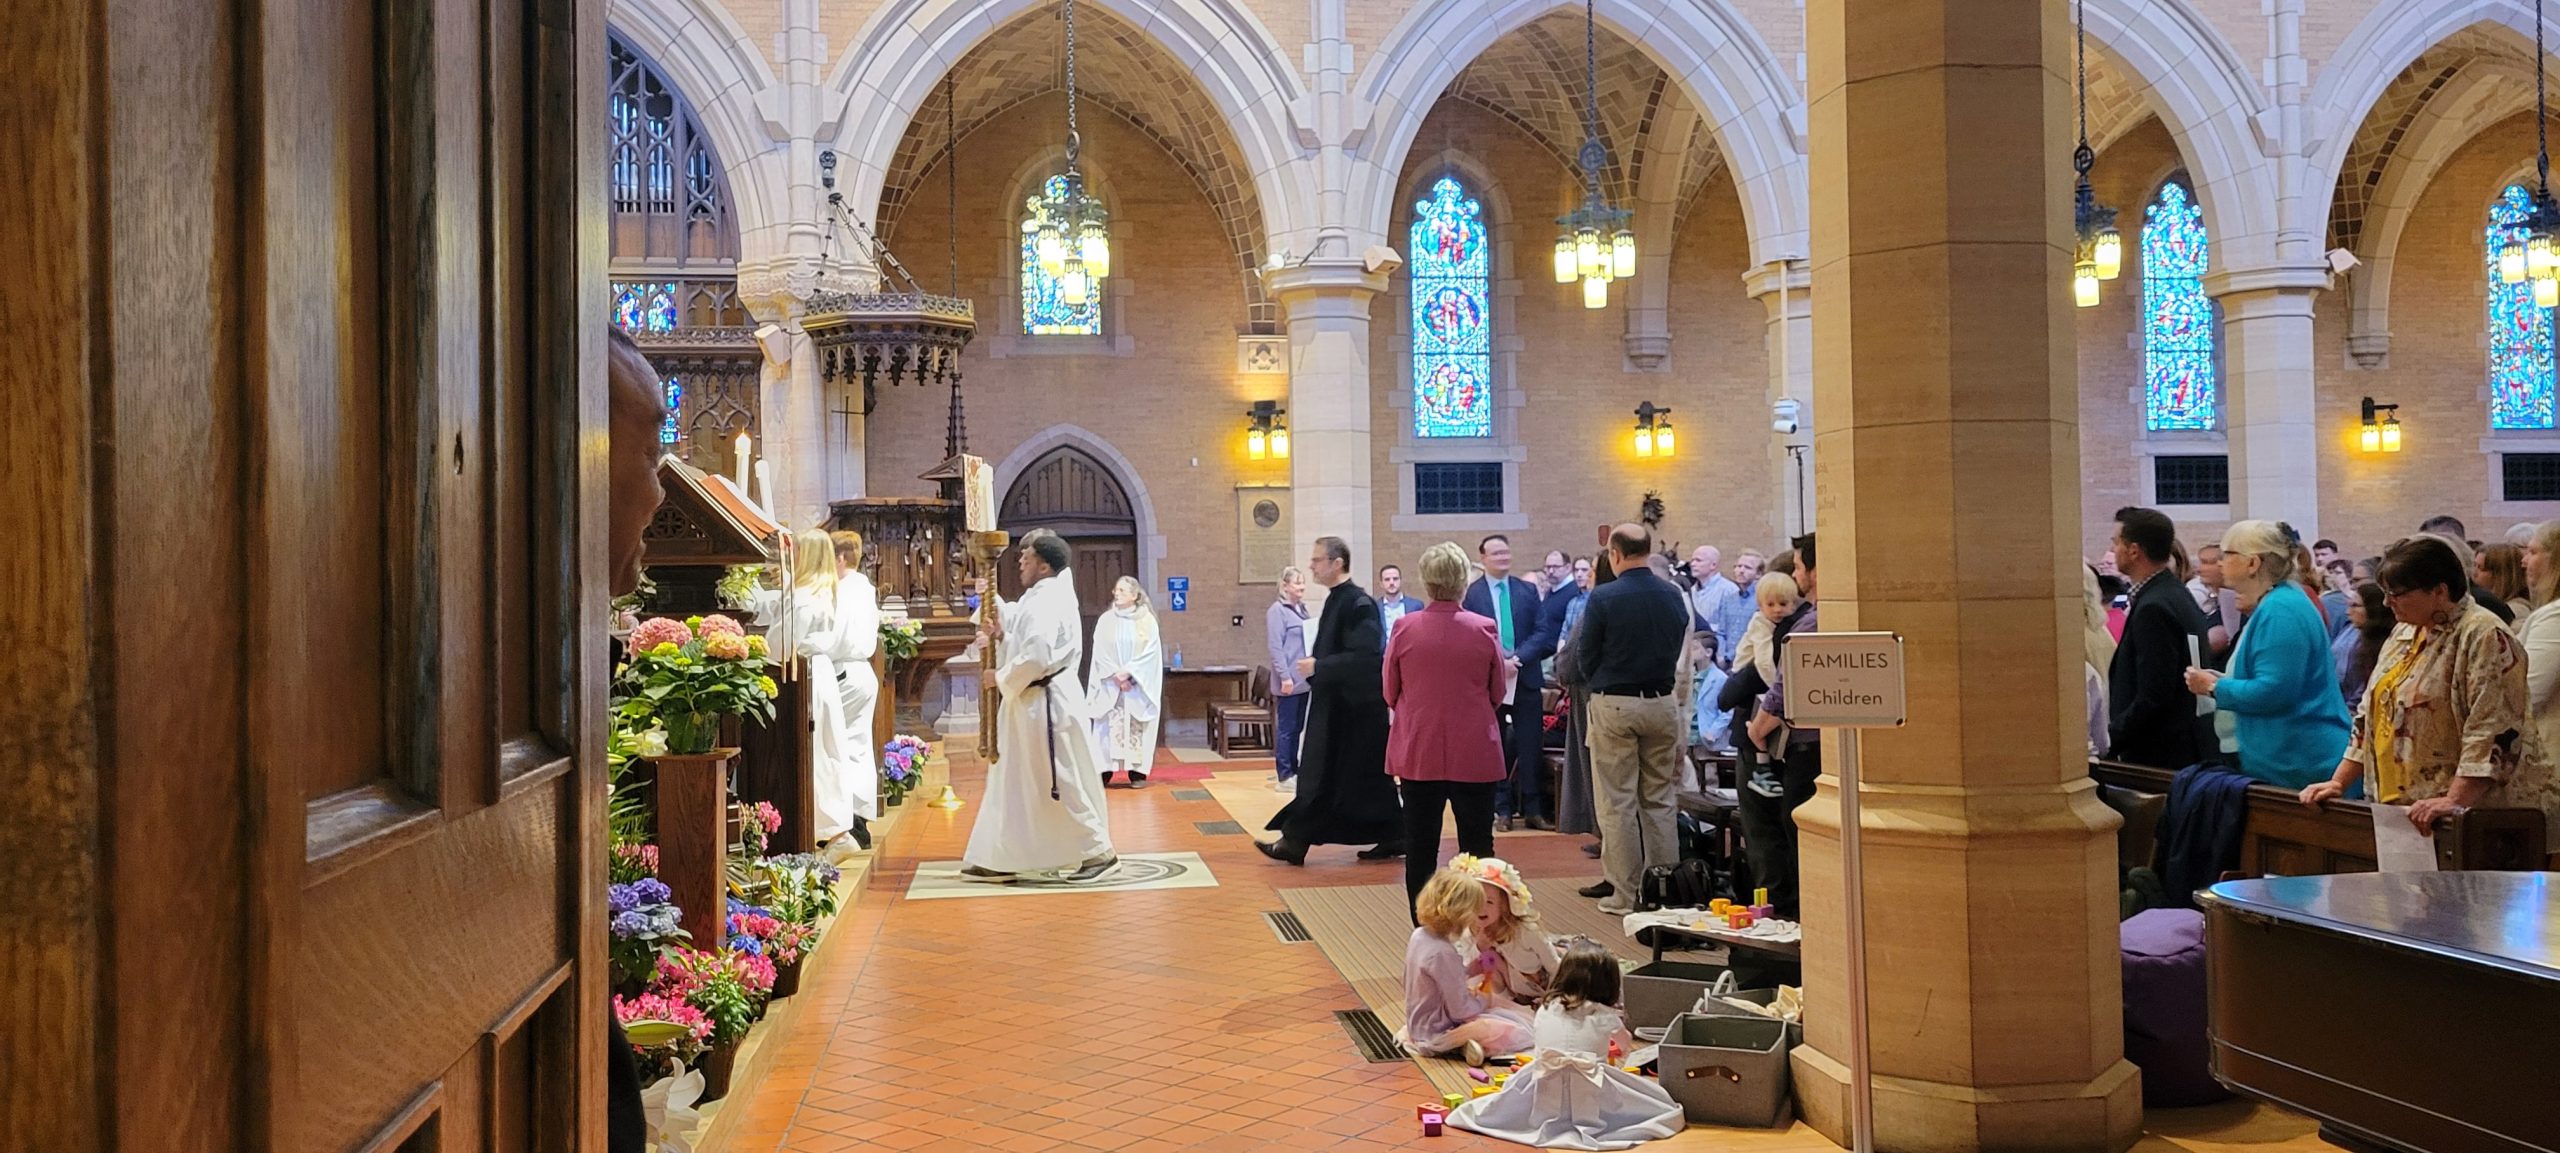 Children in Mass